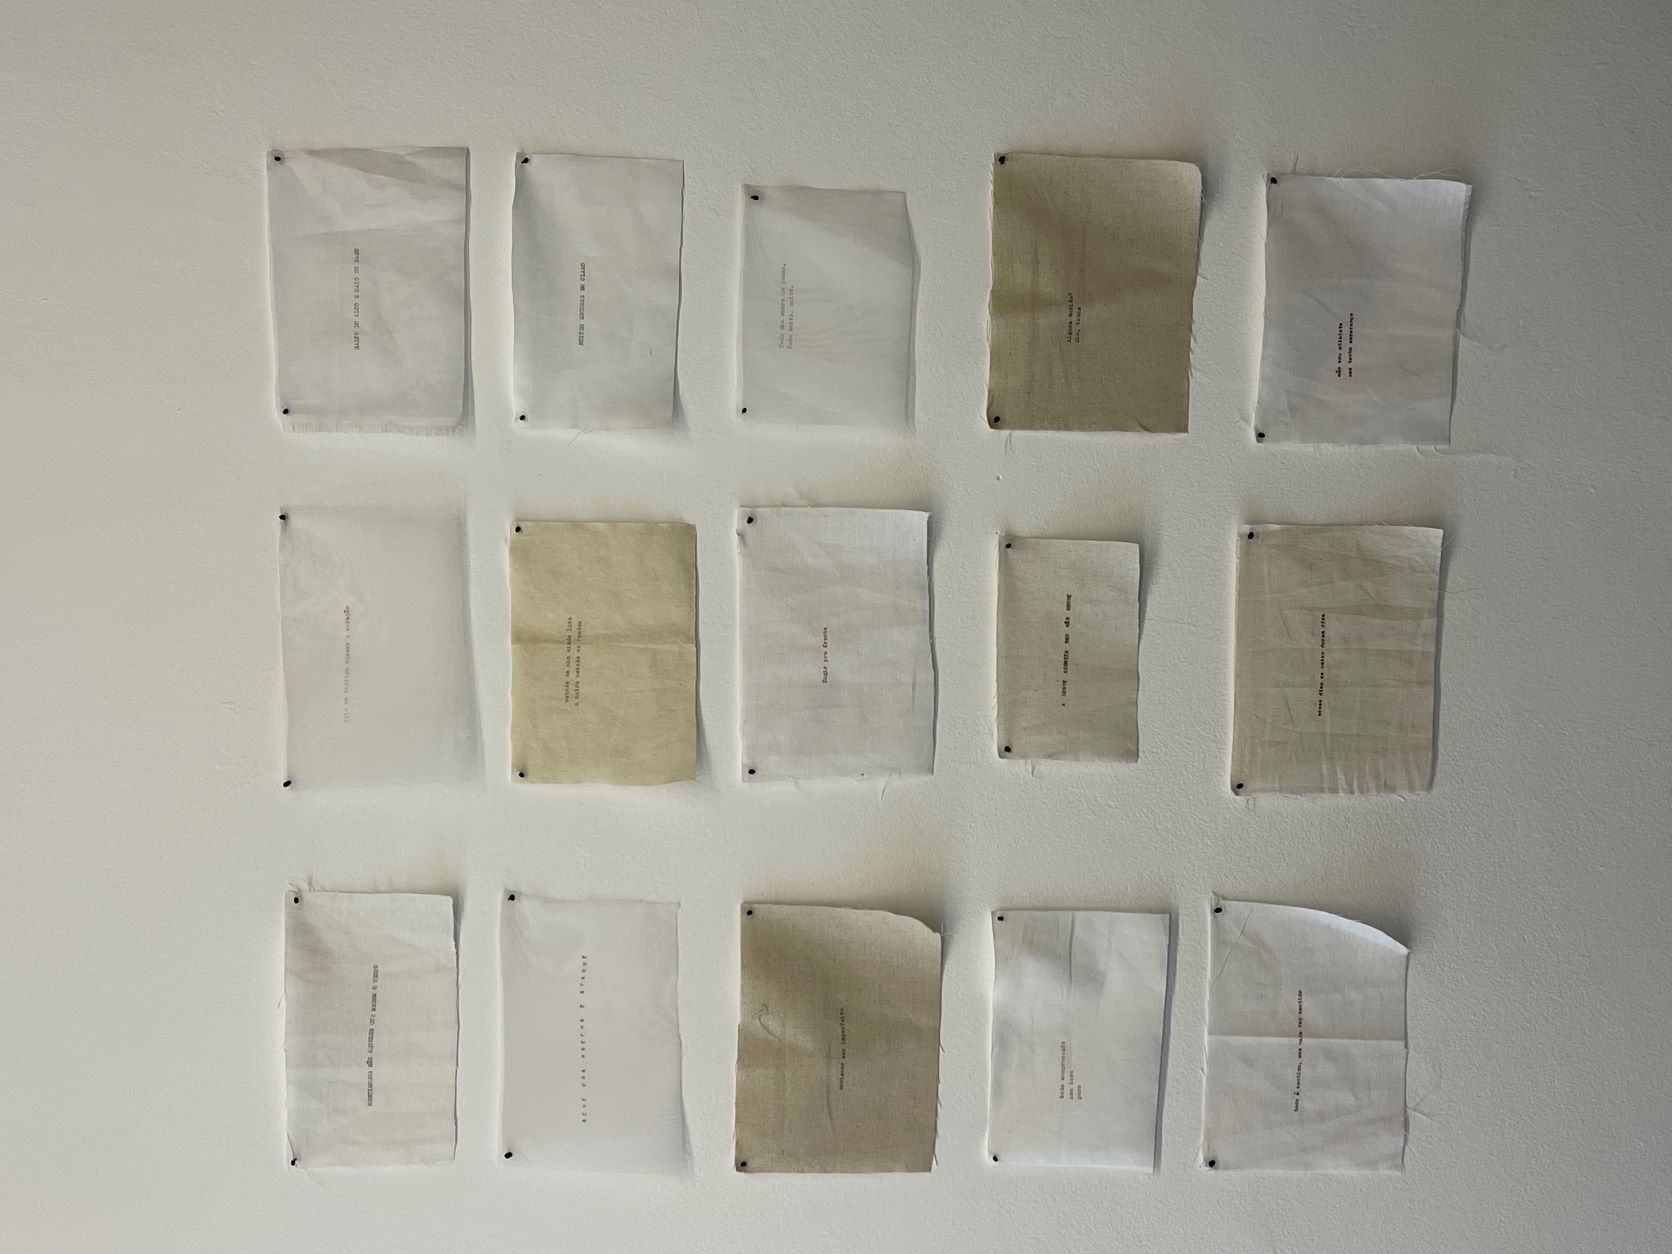 01.7 Verena Smit. Retalhos 1, 2022 Poliptico de 15 desenhos datilografia sobre tecido, sem mold Ed. 1-3.